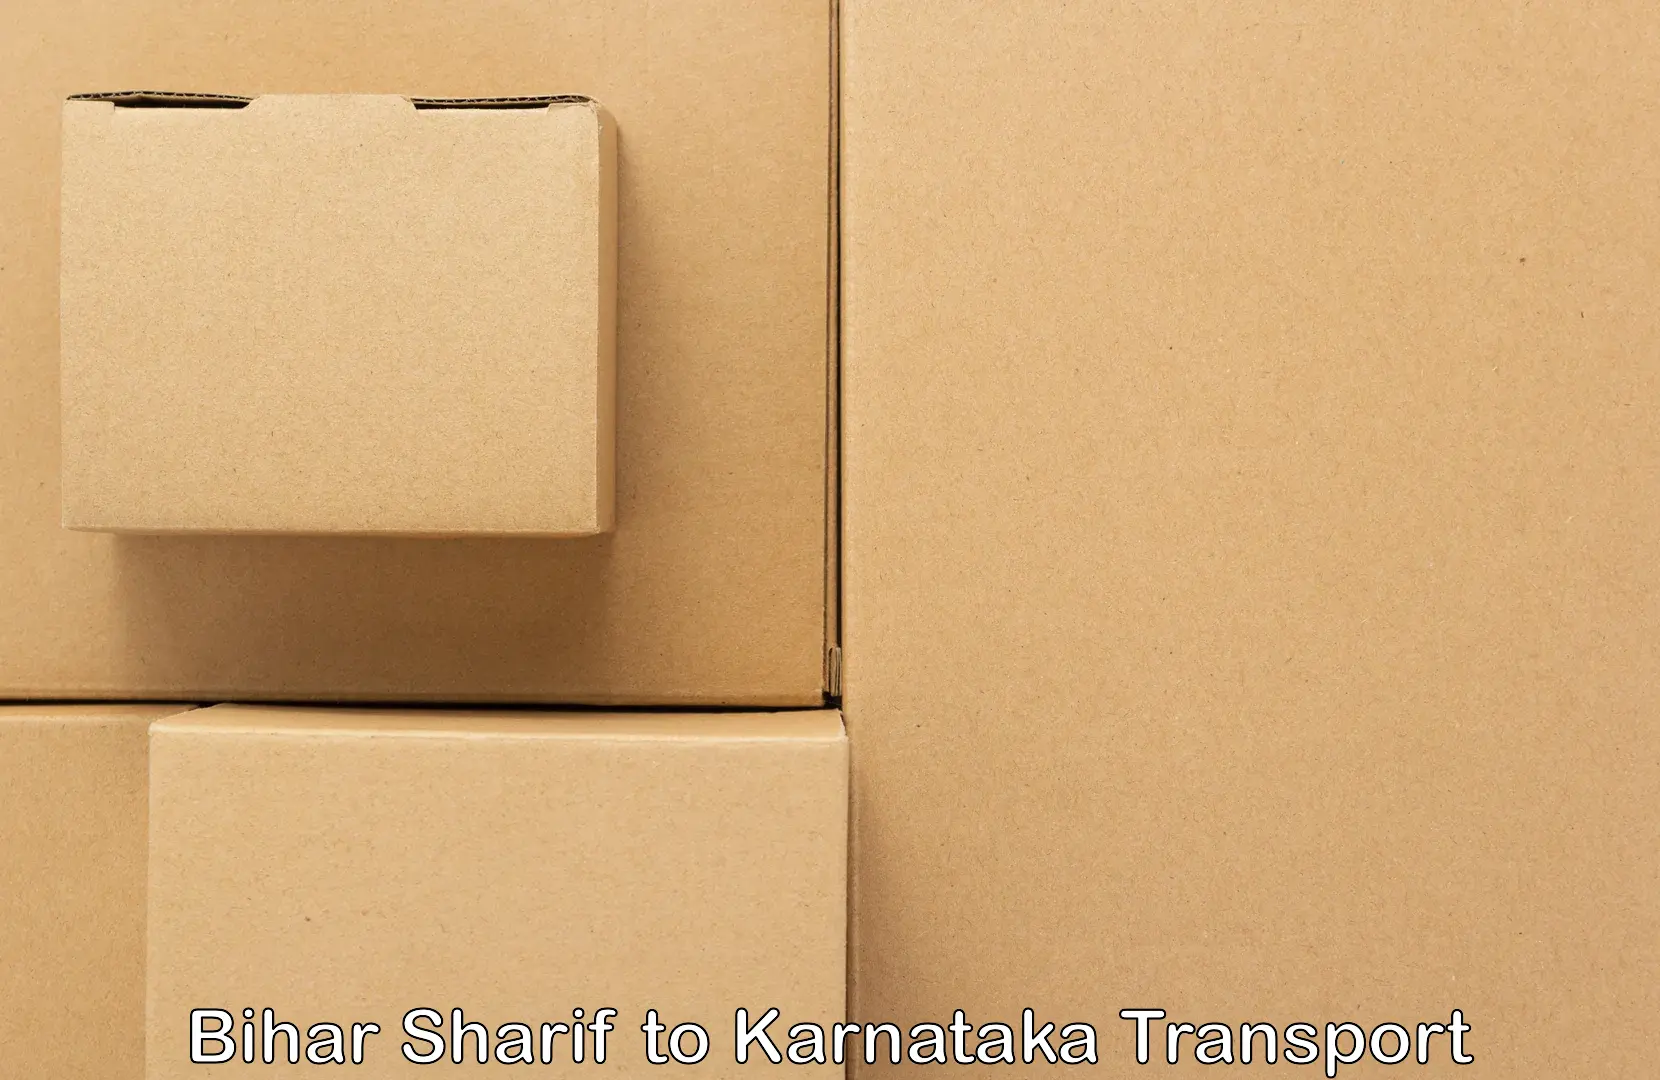 Package delivery services Bihar Sharif to Kanjarakatte